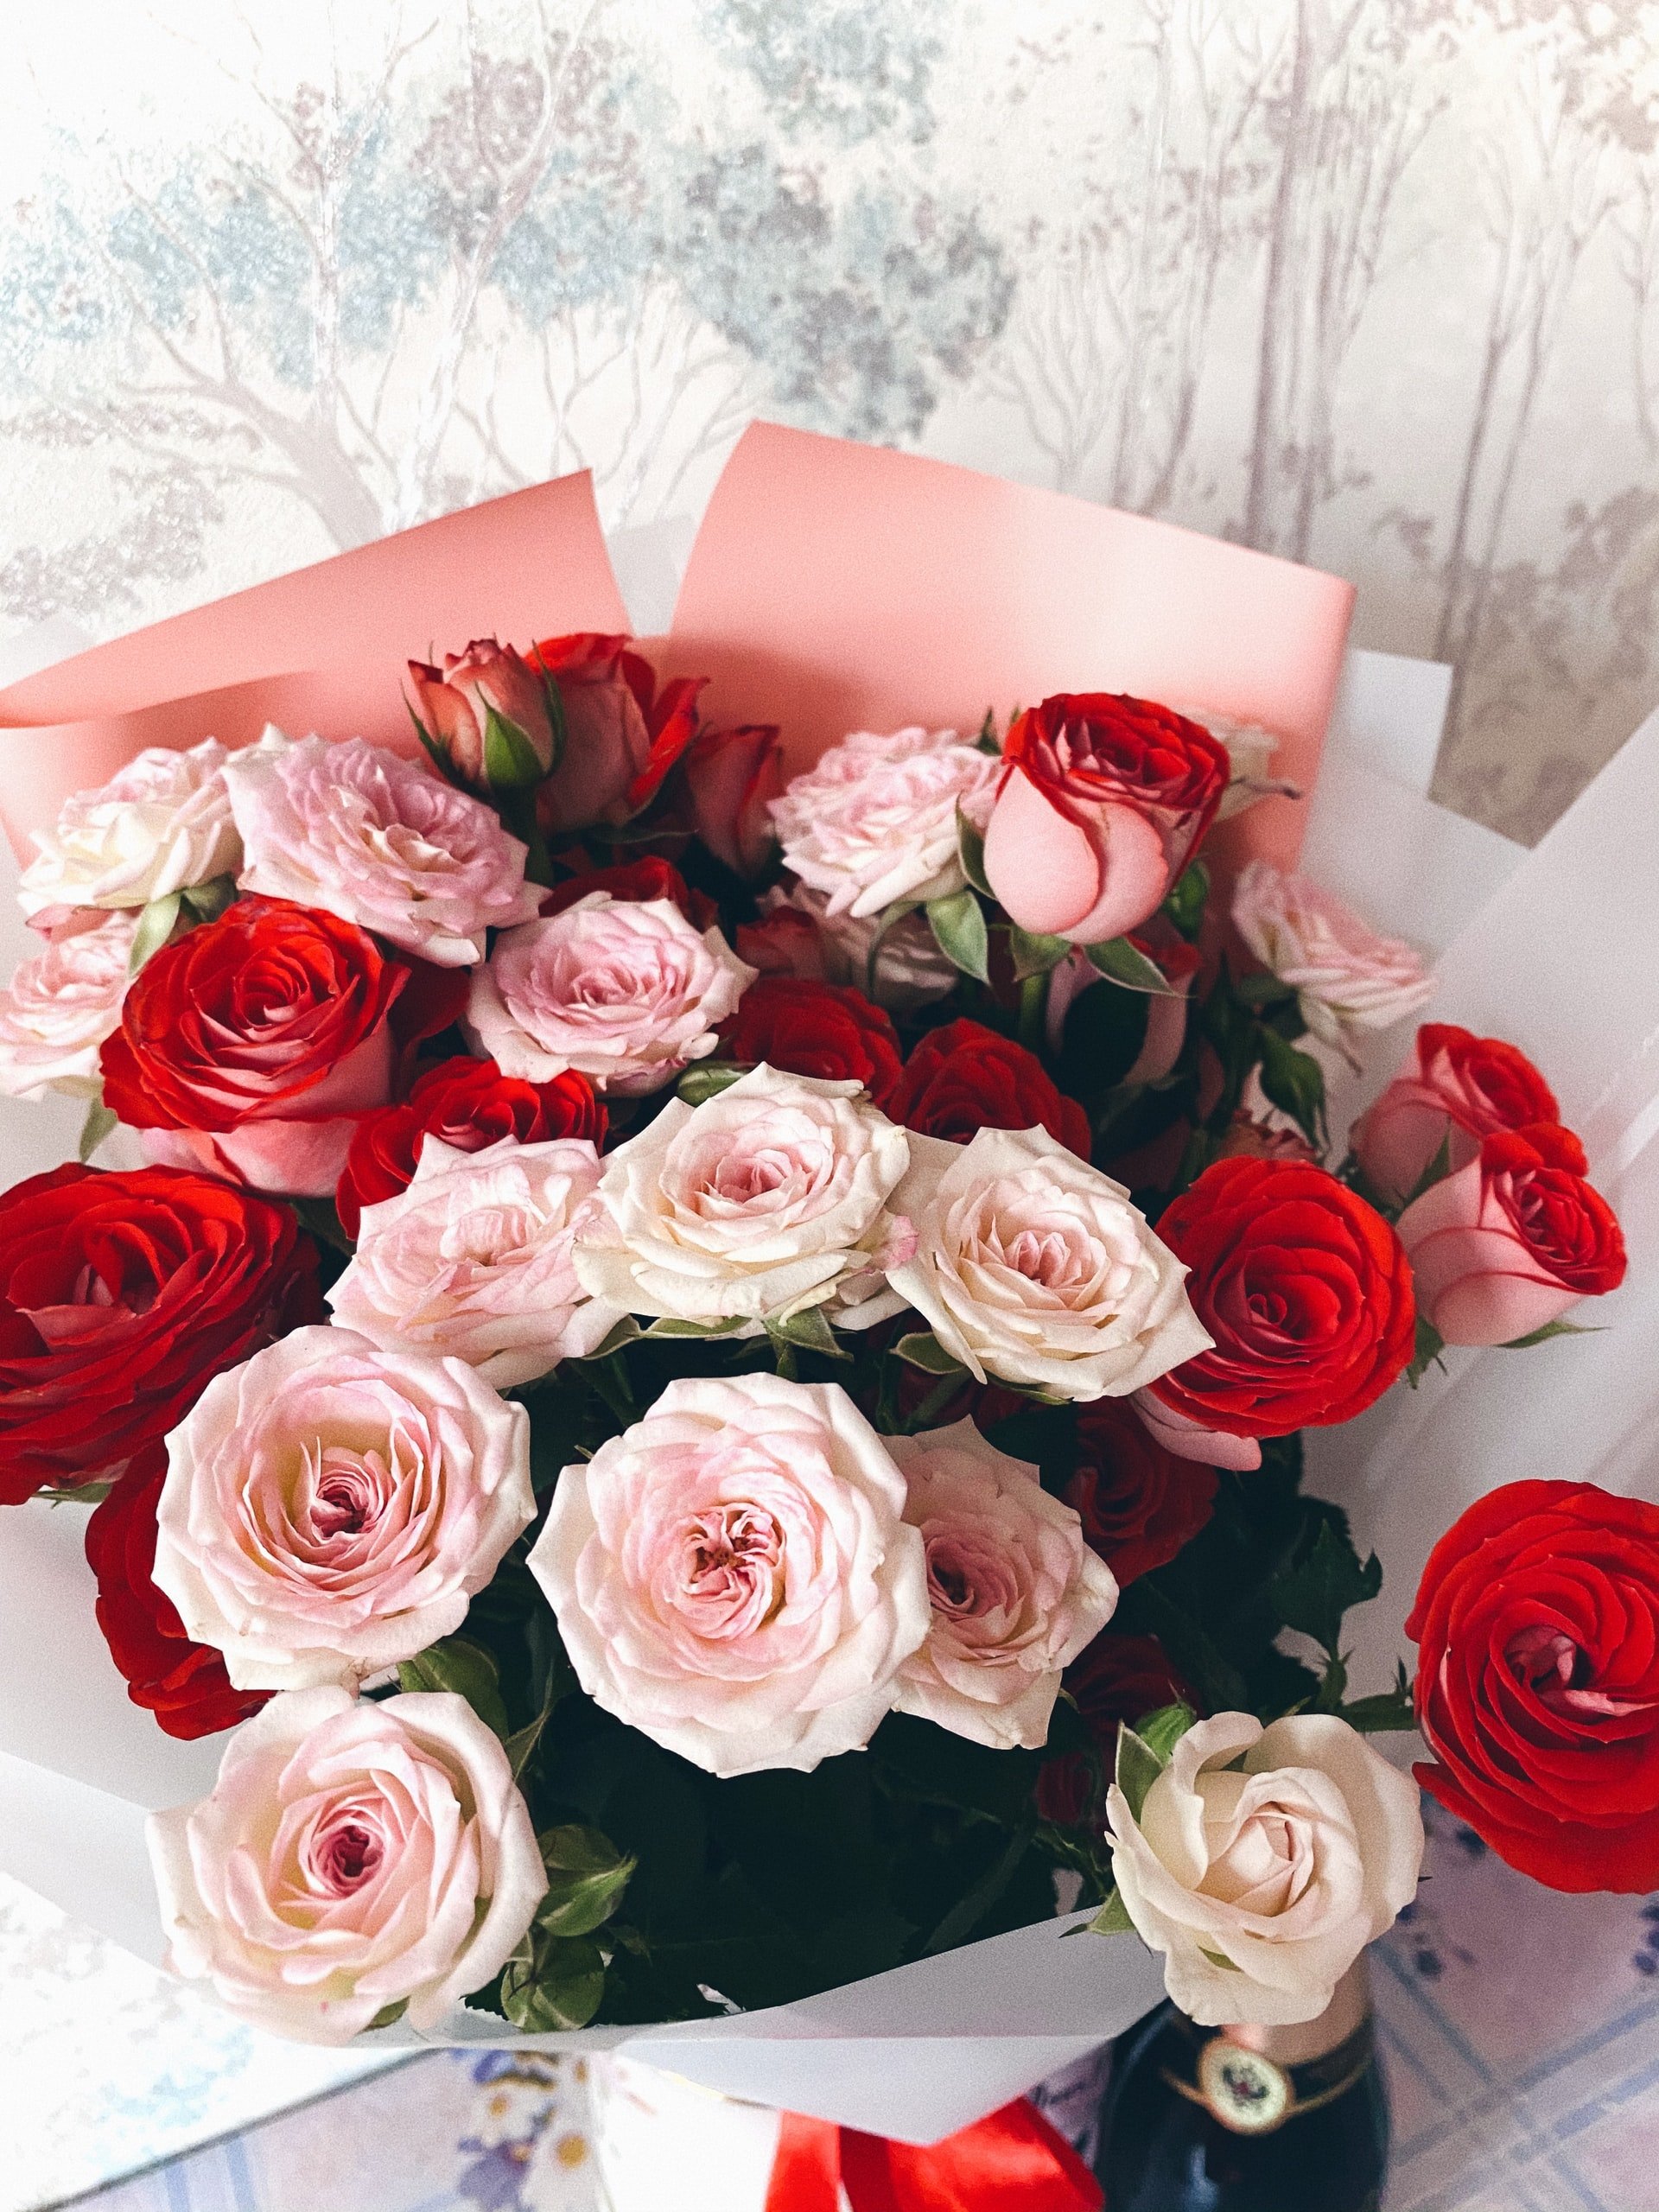 Bouquet of roses | Source: Unsplash